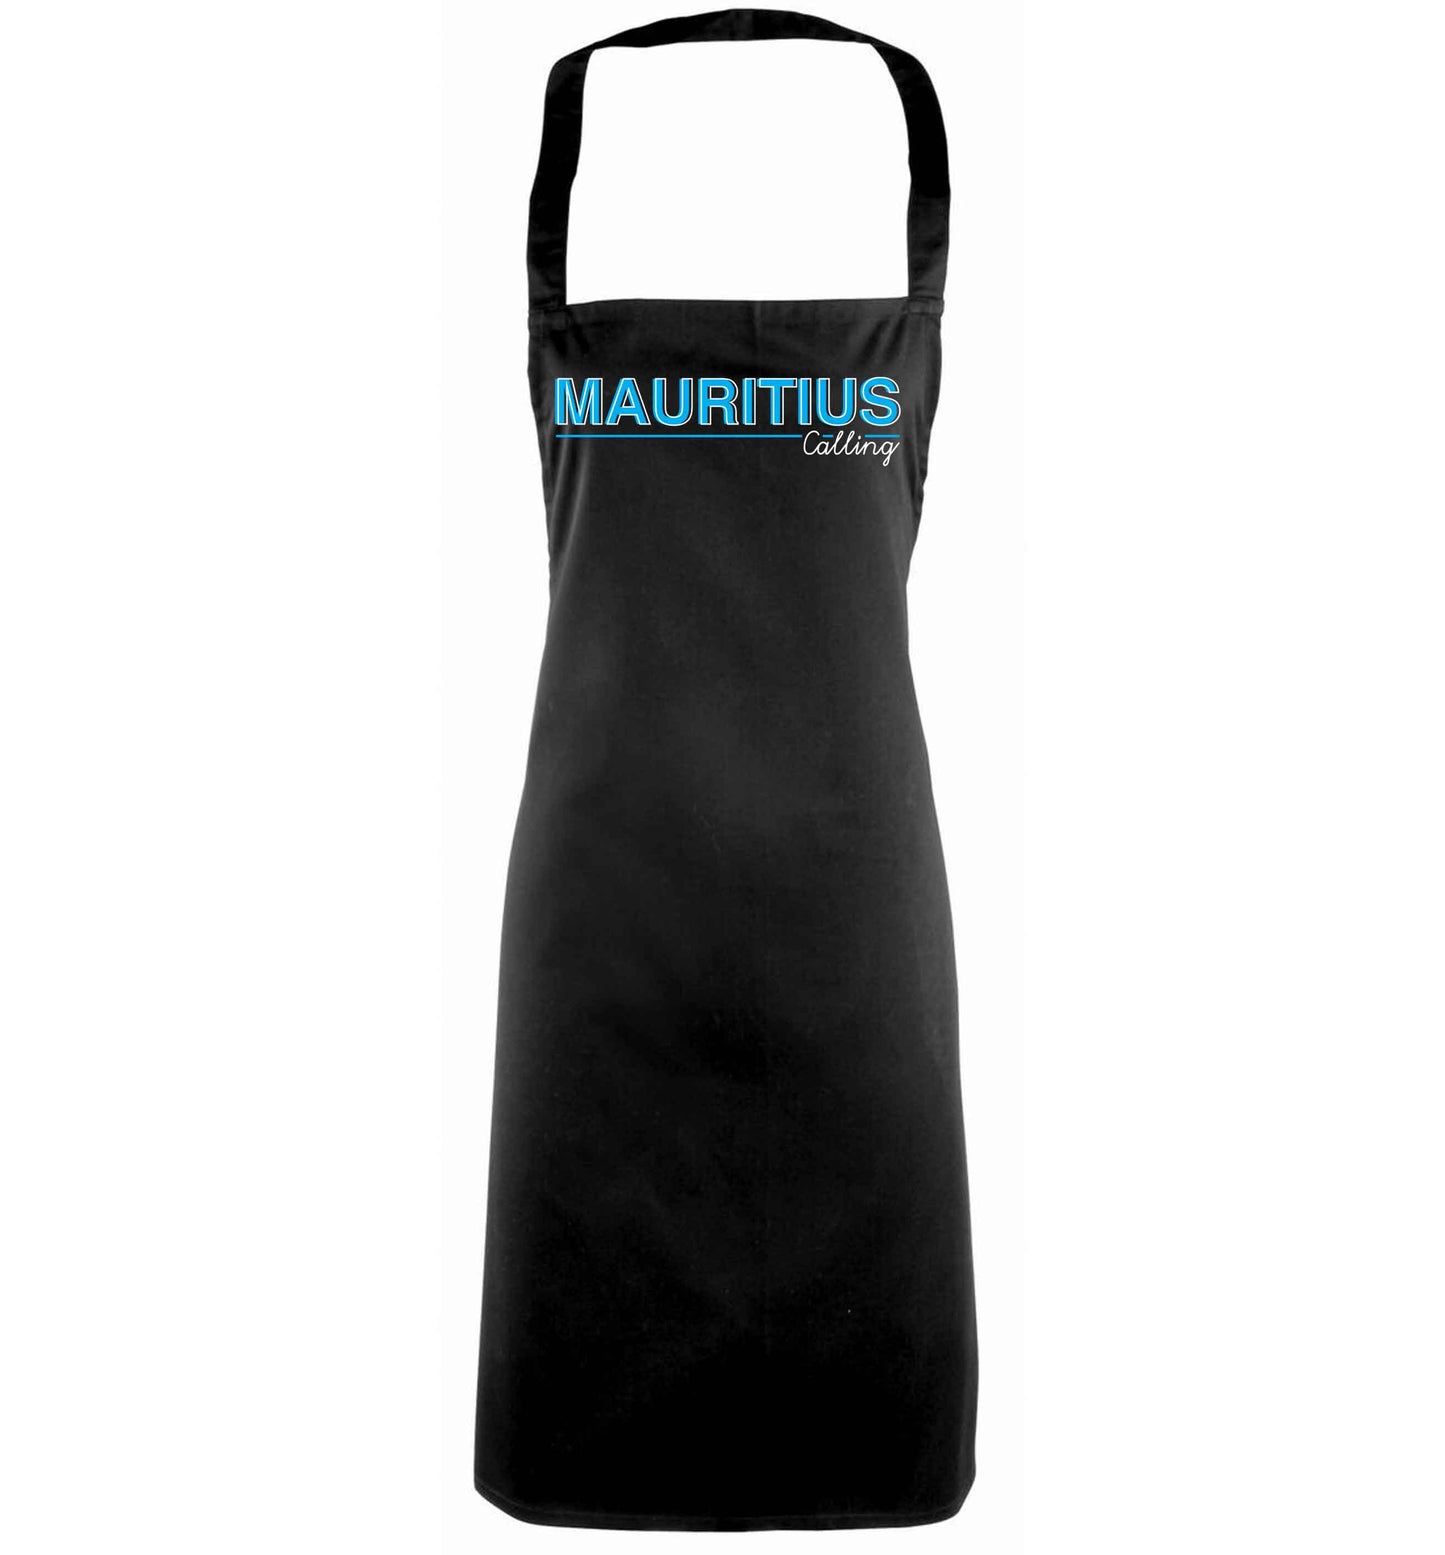 Mauritius calling black apron